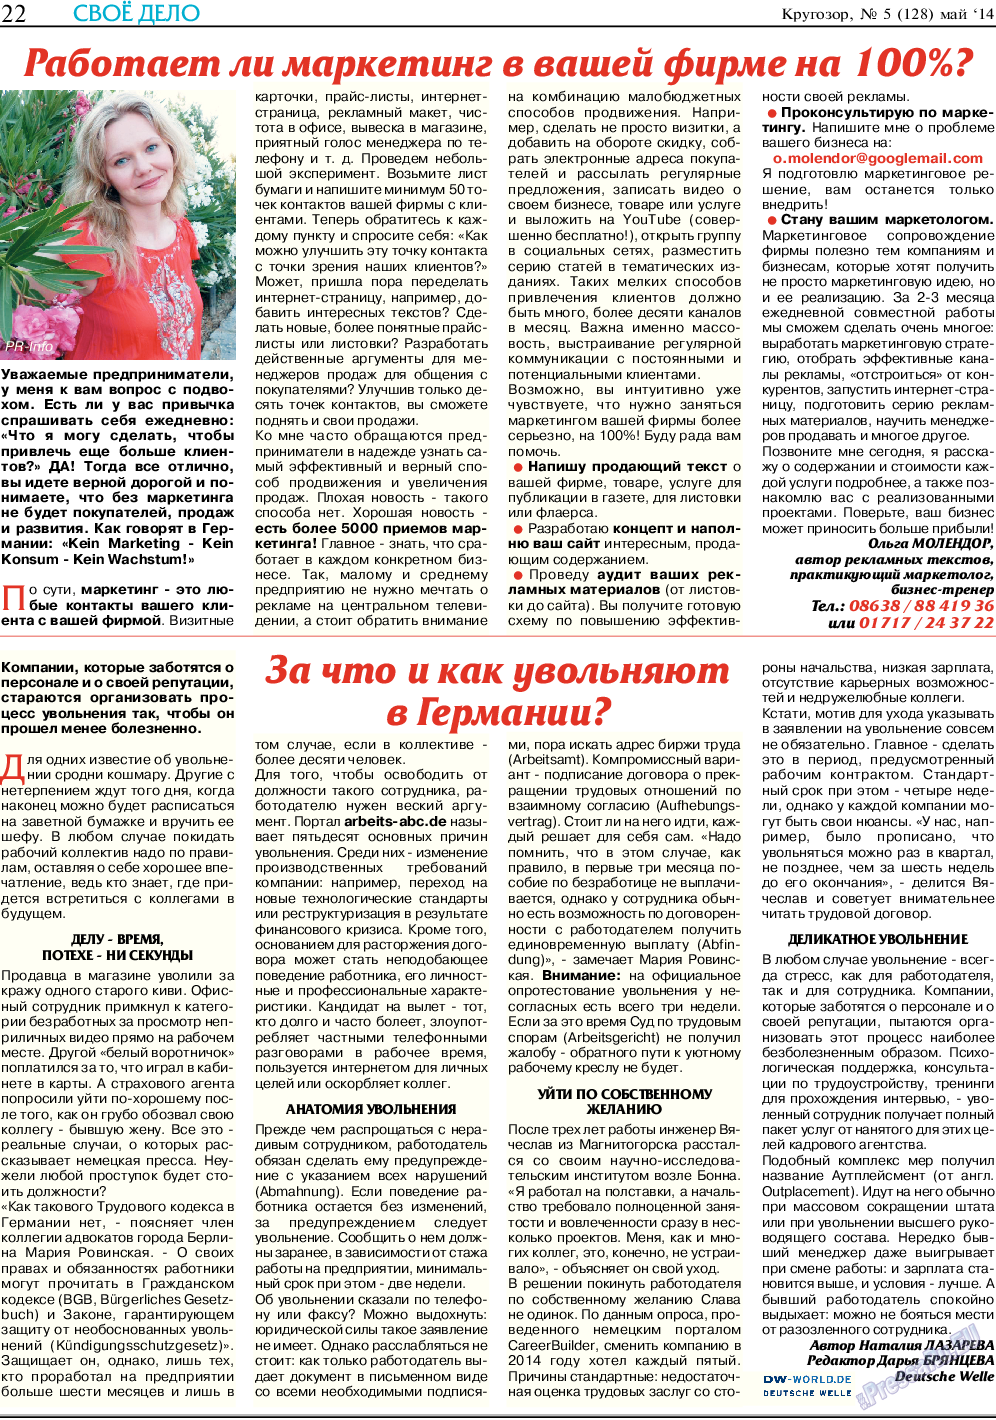 Кругозор (газета). 2014 год, номер 5, стр. 22